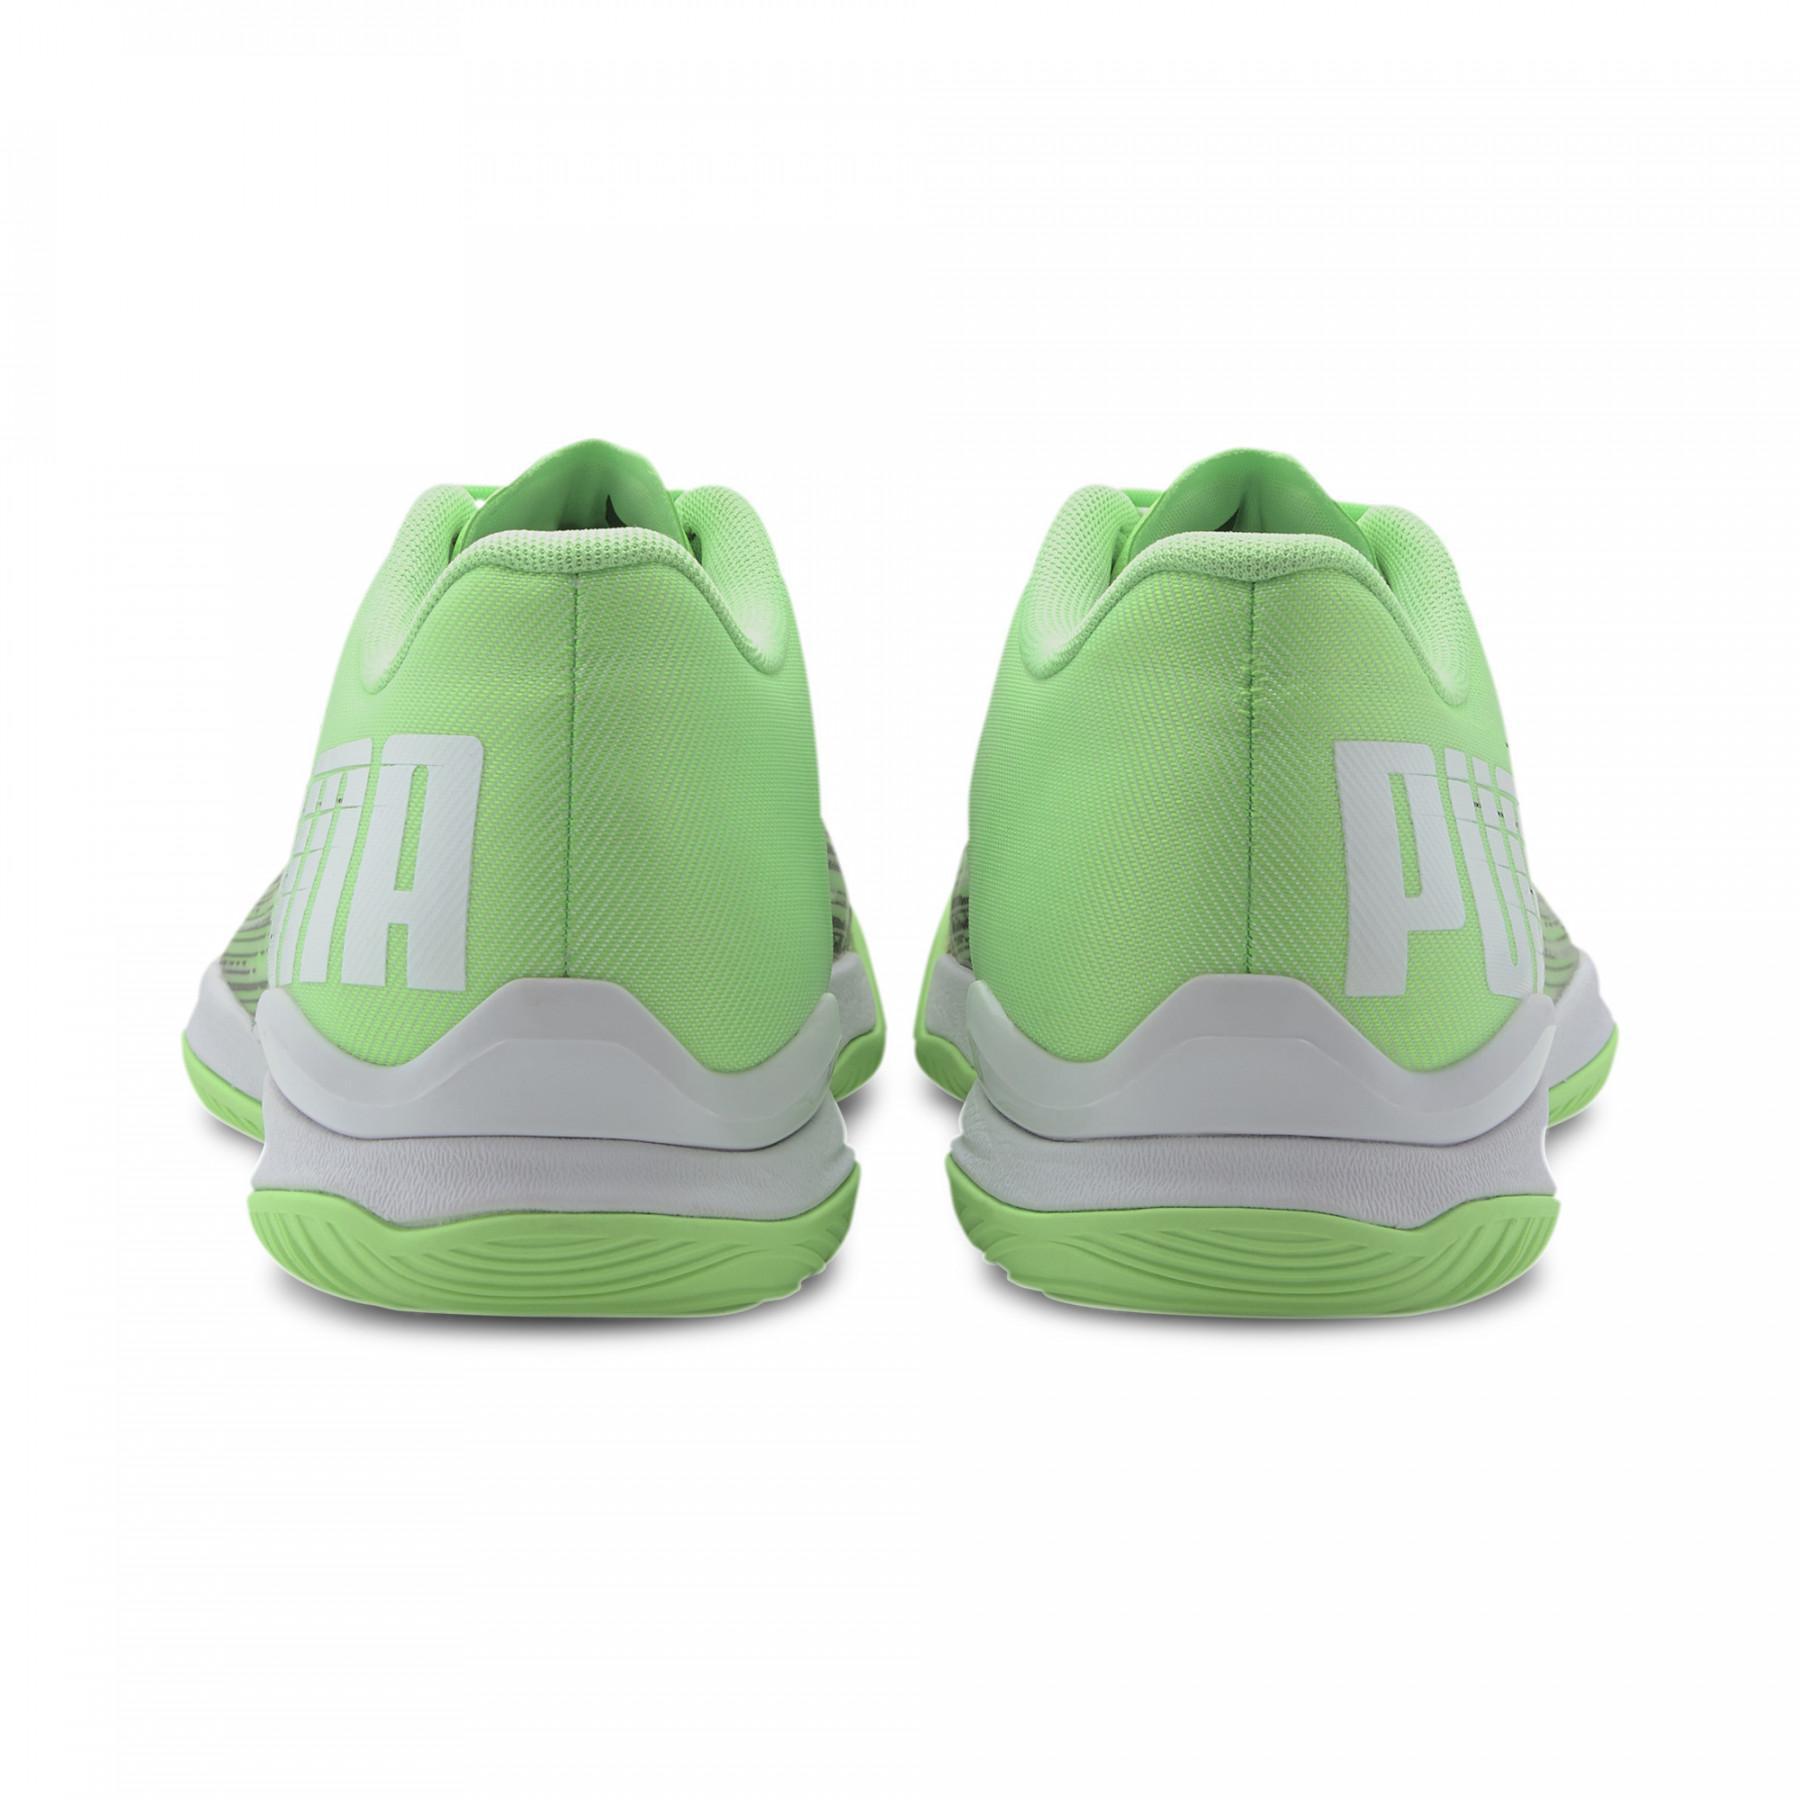 Sapatos Puma Adrenalite 2.1